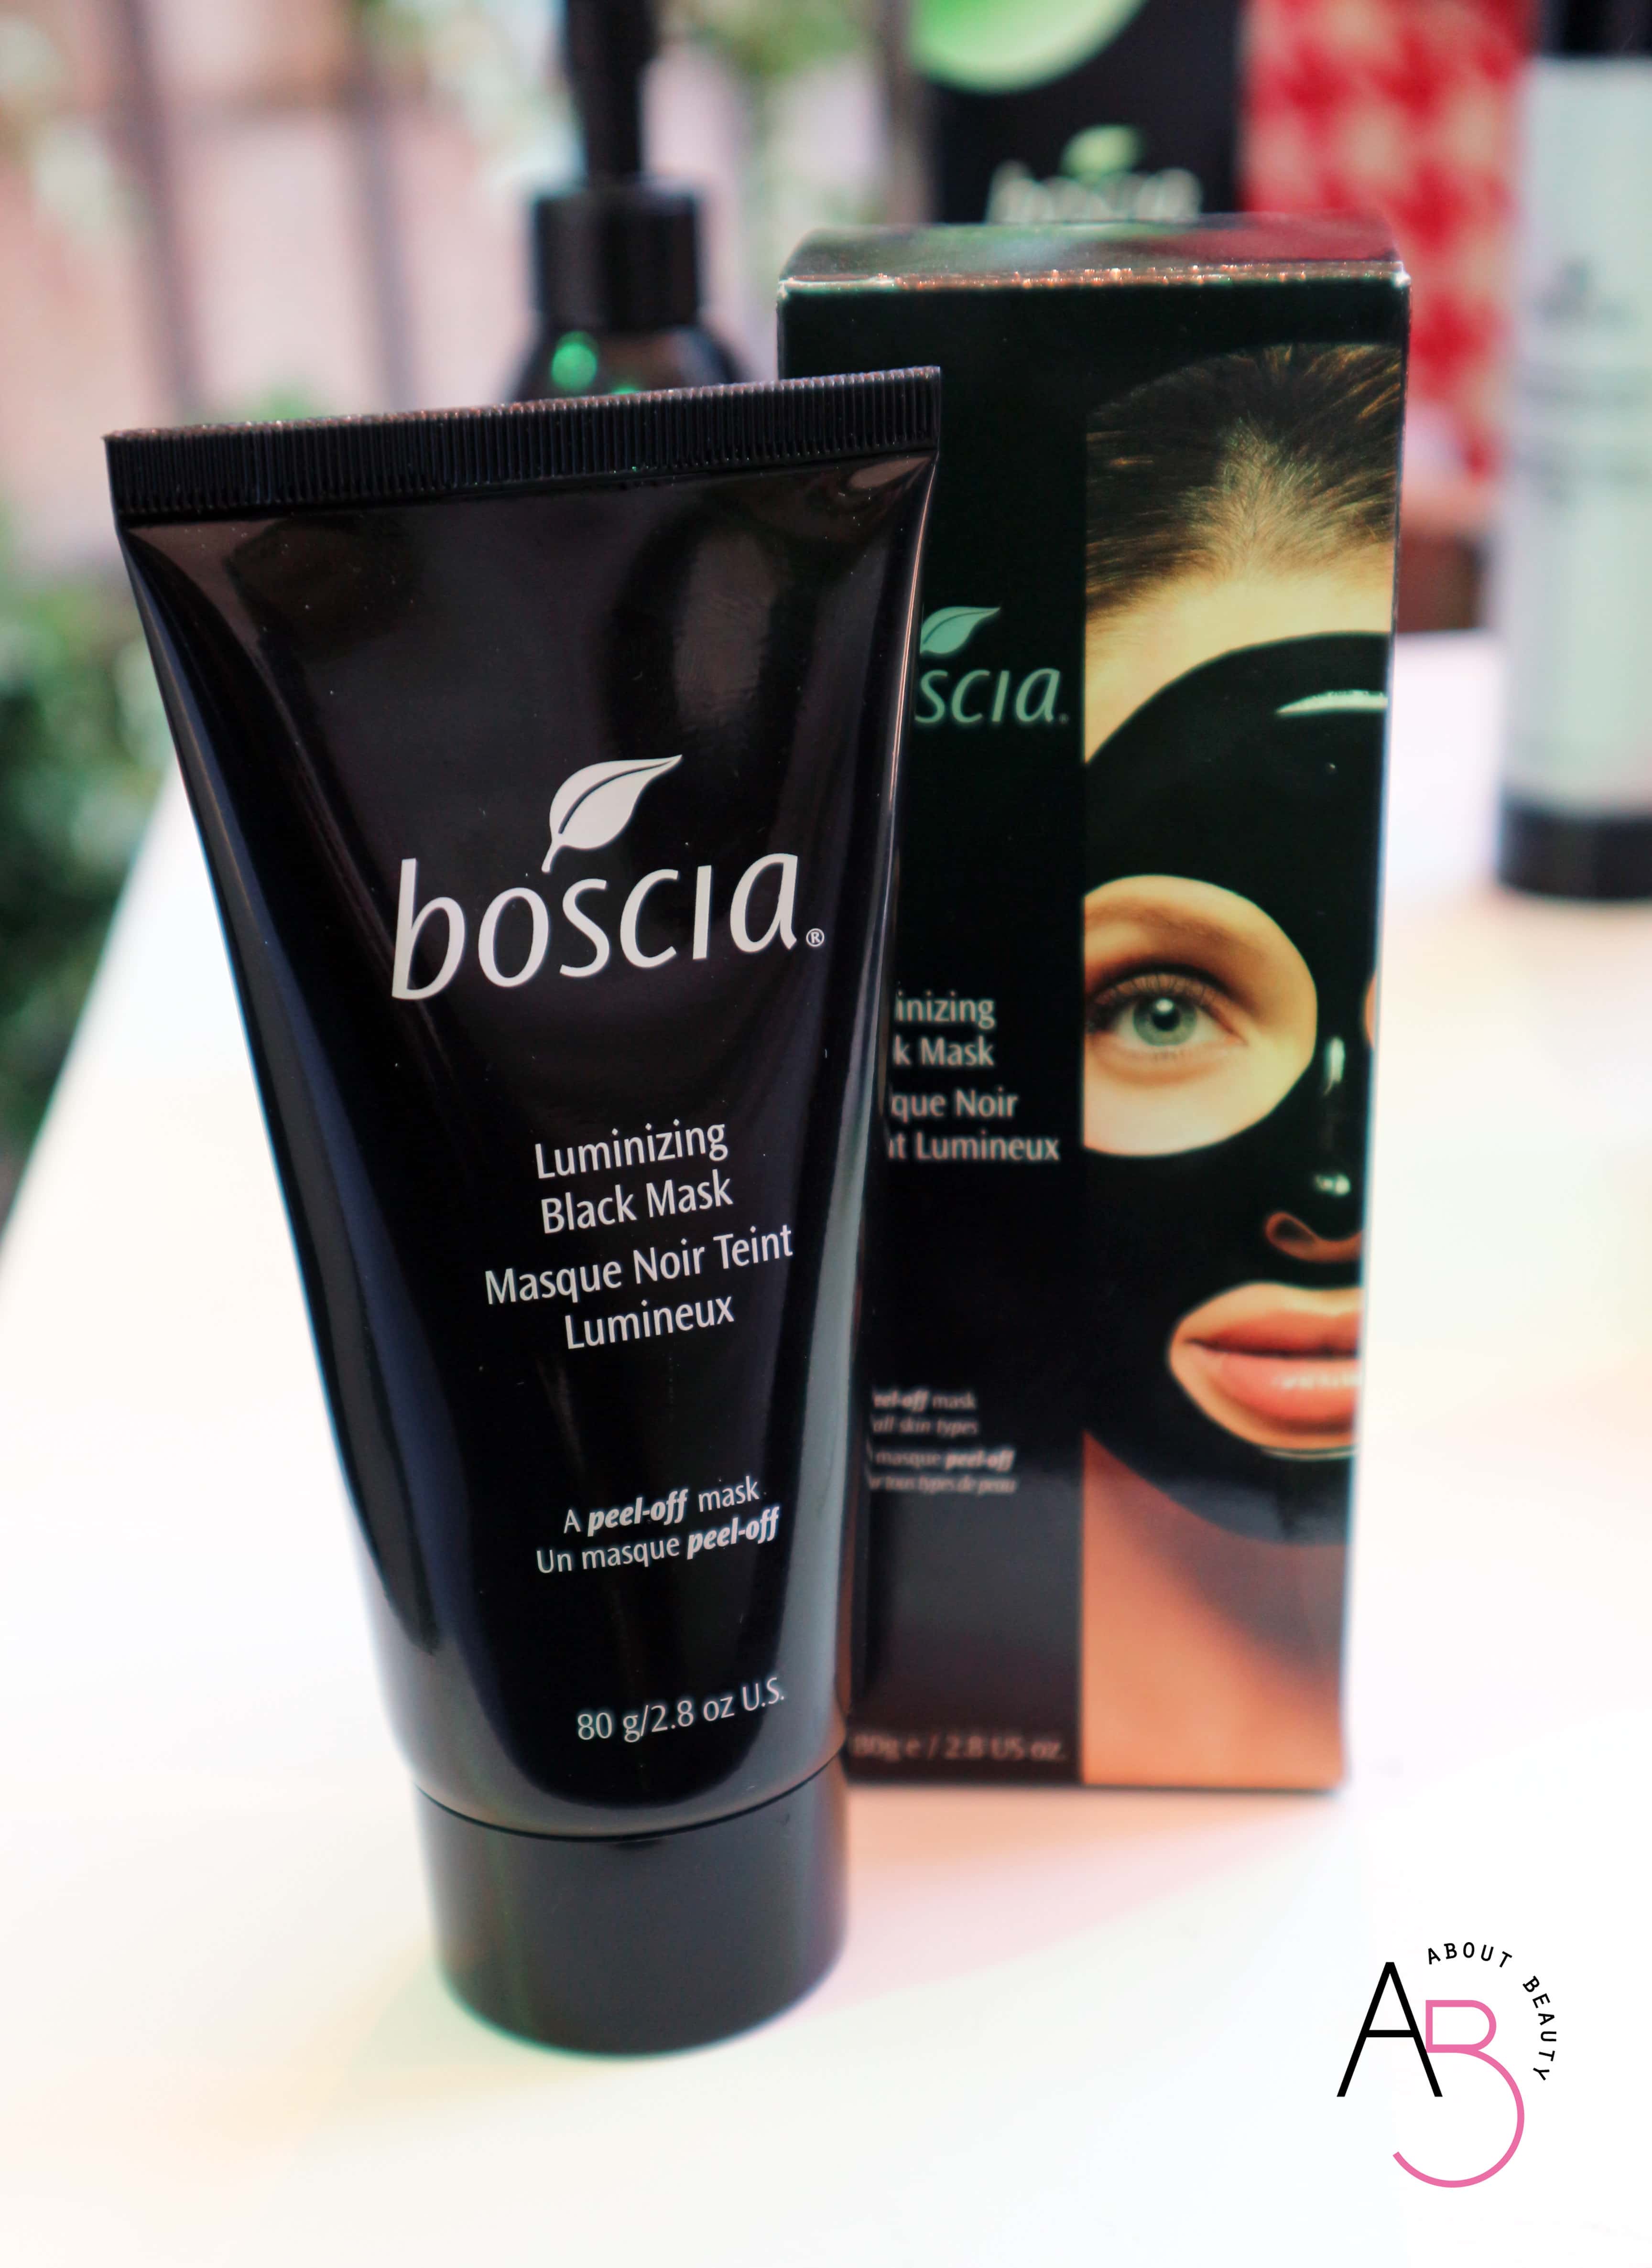 La skincare Boscia arriva in Italia - Info, prezzo, dove acquistare, review, recensione, opinioni - Luminizing Black Mask